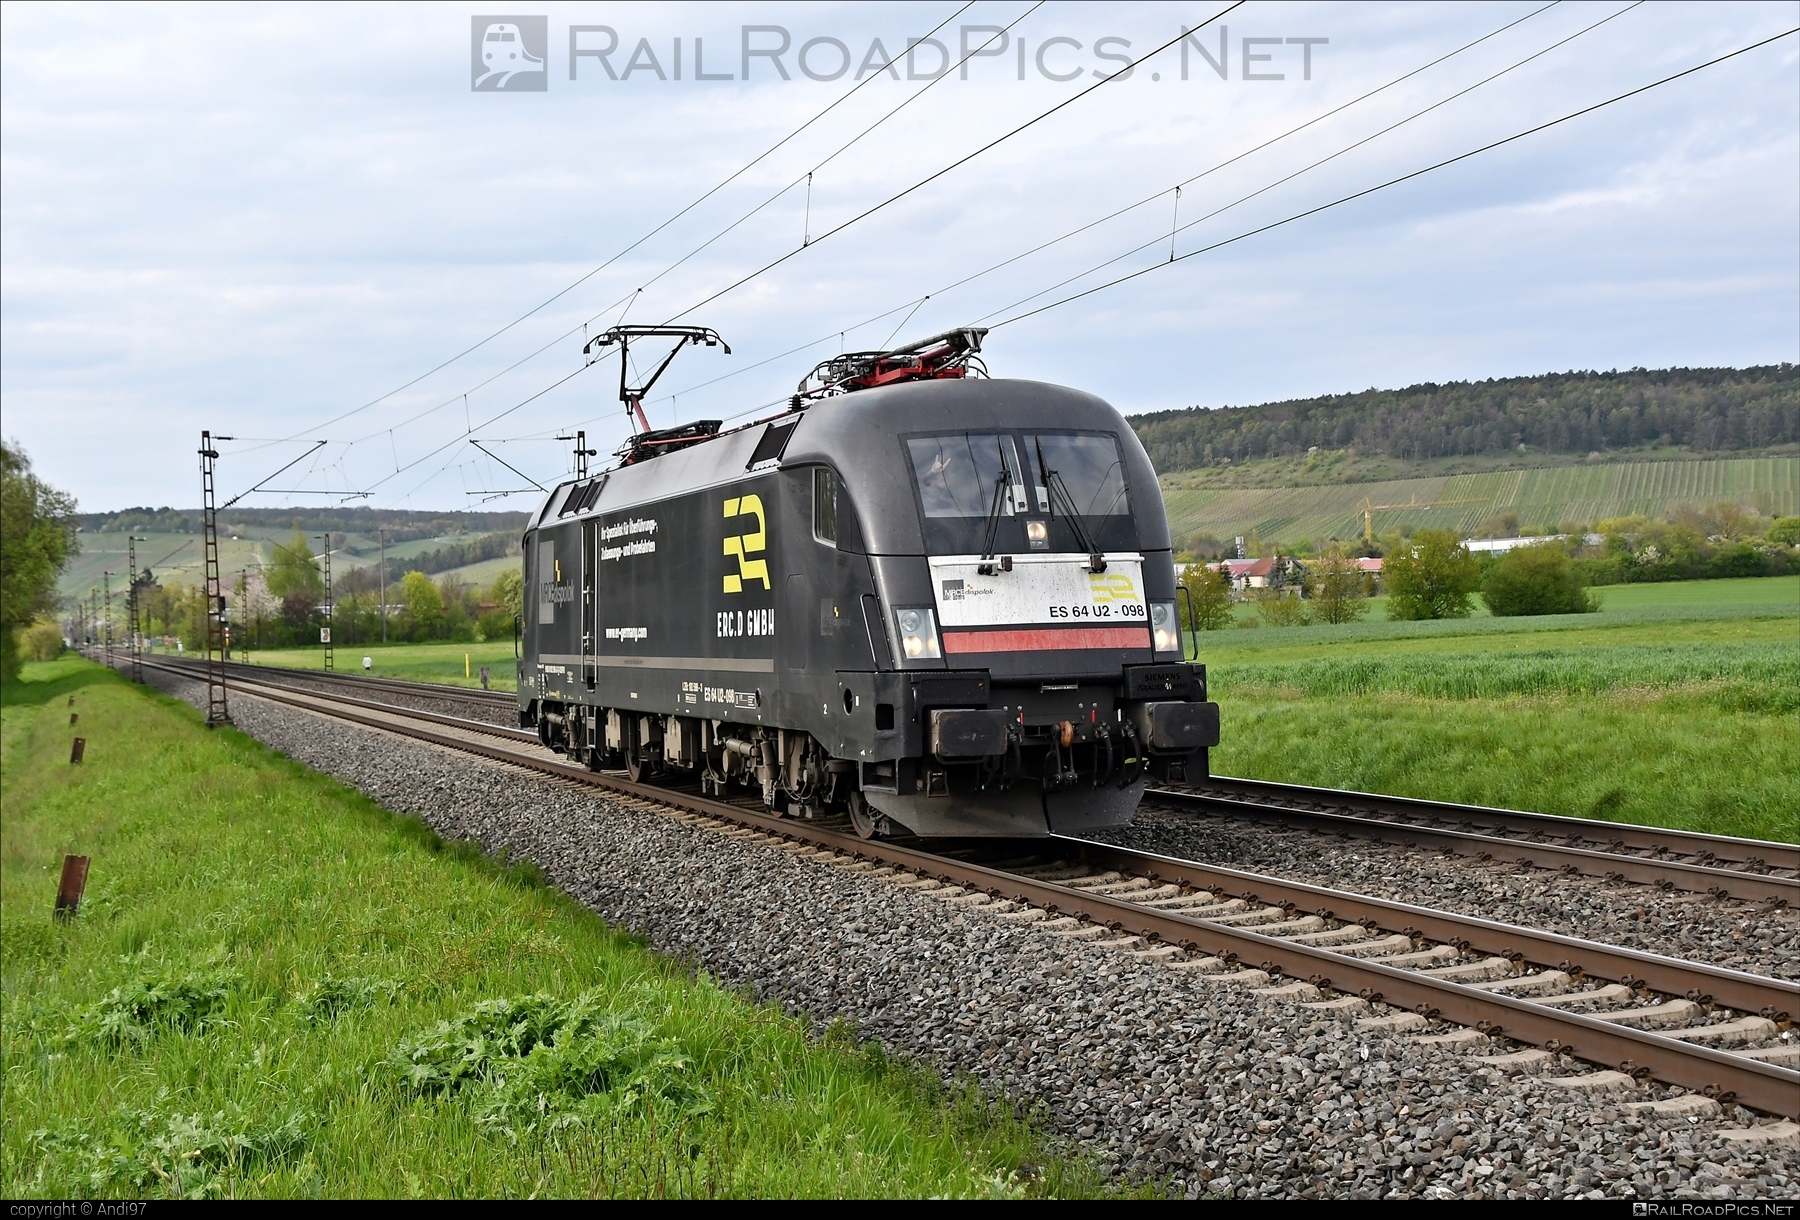 Siemens ES 64 U2 - 182 598 operated by European Railway Company Deutschland GmbH #dispolok #erc #es64 #es64u2 #eurosprinter #mitsuirailcapitaleurope #mitsuirailcapitaleuropegmbh #mrce #siemens #siemensEs64 #siemensEs64u2 #siemenstaurus #taurus #tauruslocomotive